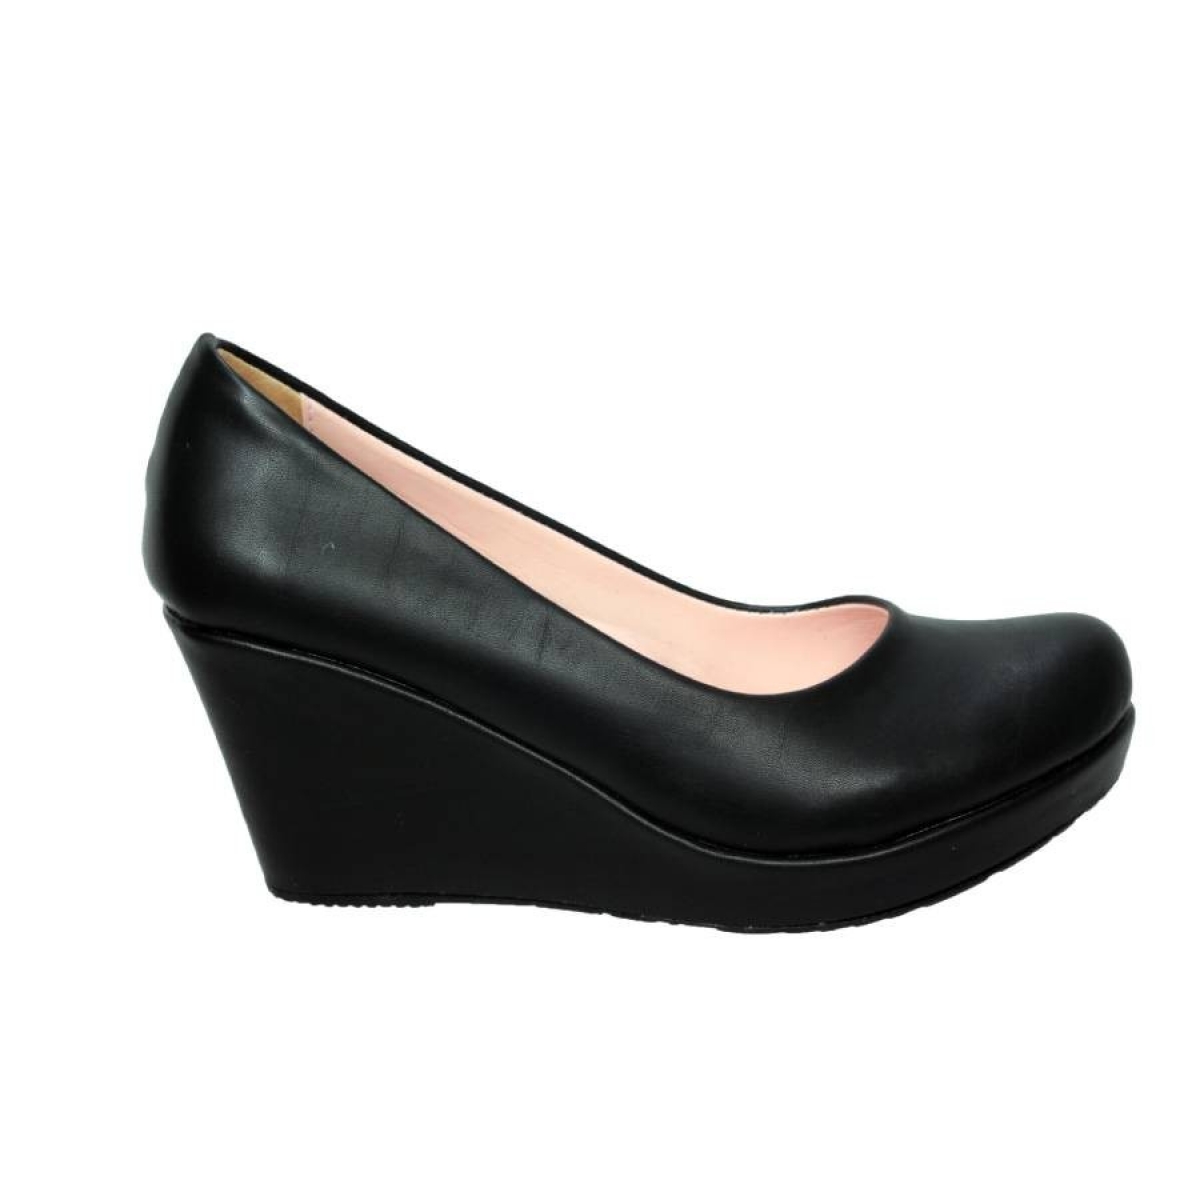 Flo Siyah DolguPlatform Topuk Kadın Ayakkabı Kalıbı Bir Numara Dardır. 2